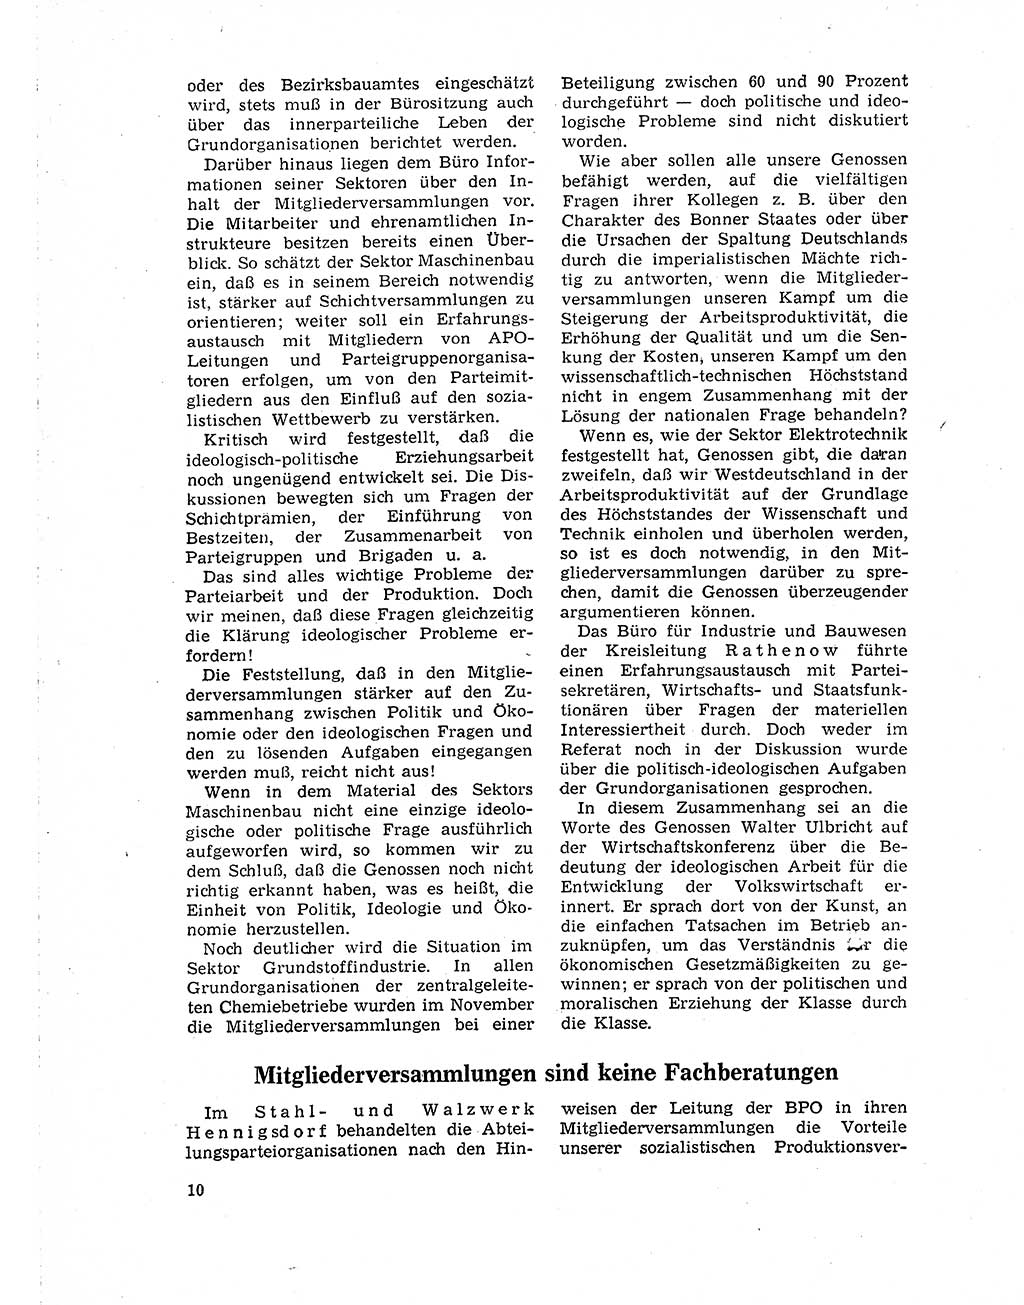 Neuer Weg (NW), Organ des Zentralkomitees (ZK) der SED (Sozialistische Einheitspartei Deutschlands) für Fragen des Parteilebens, 19. Jahrgang [Deutsche Demokratische Republik (DDR)] 1964, Seite 10 (NW ZK SED DDR 1964, S. 10)